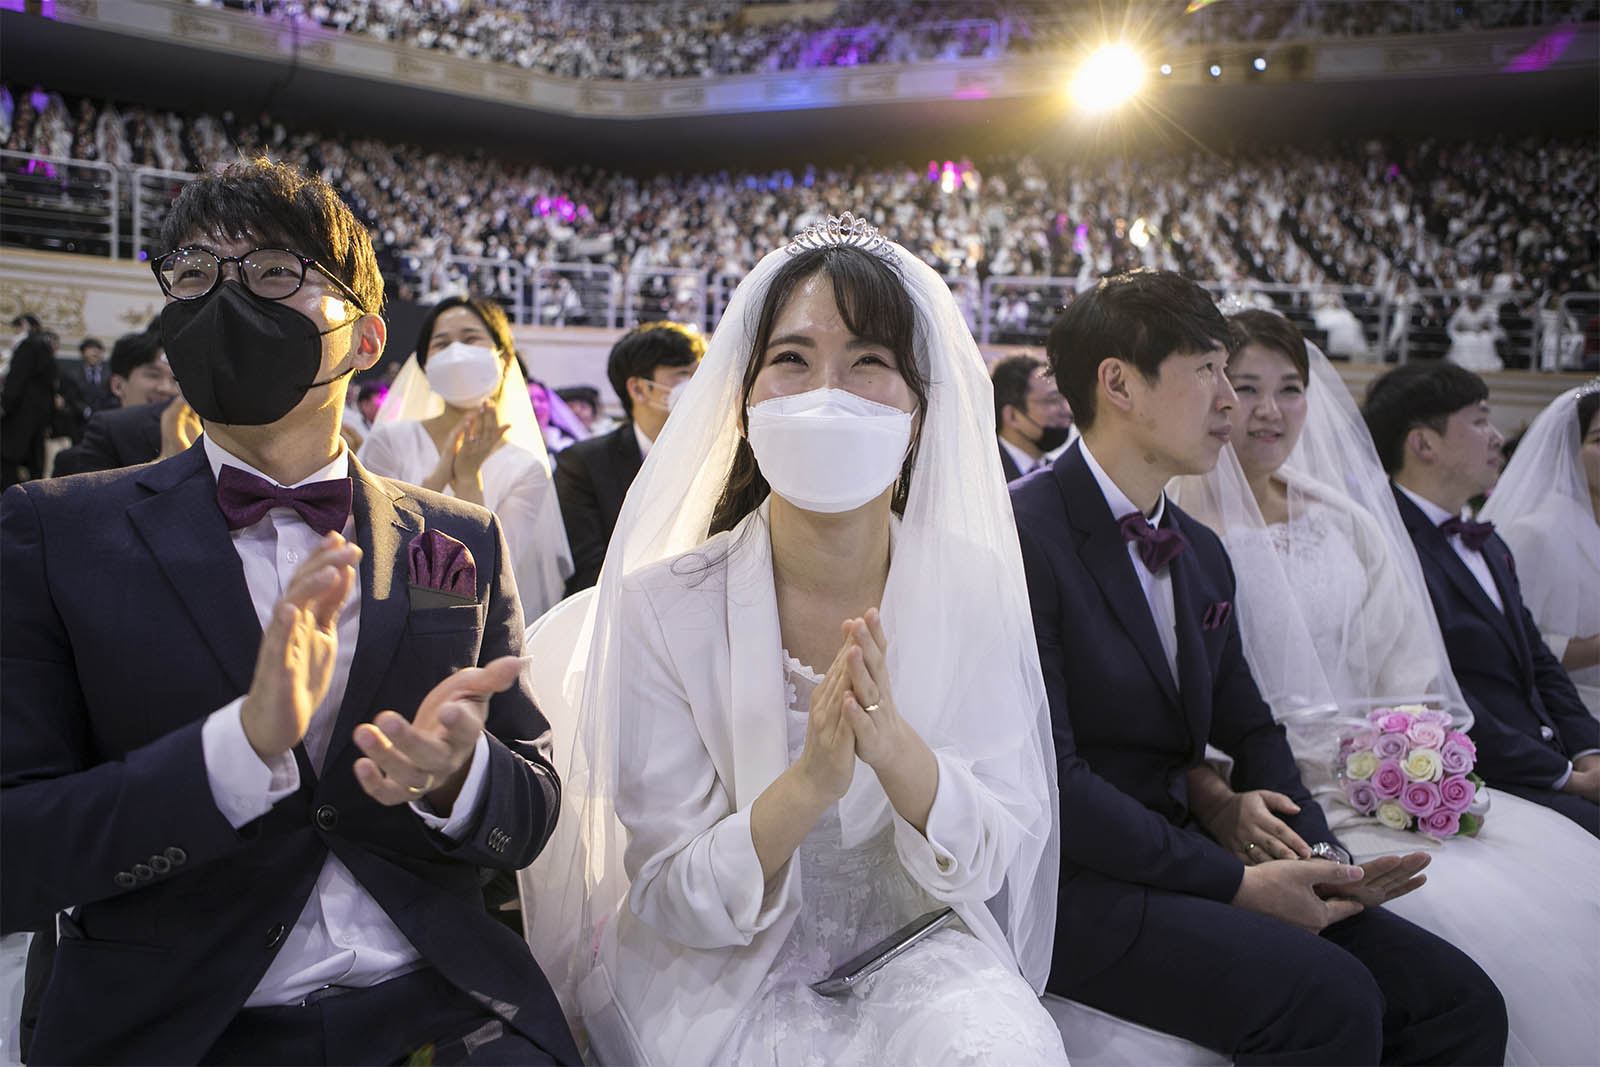 כלה וחתן בחתונה המונית (Photo by Woohae Cho/Getty Images)